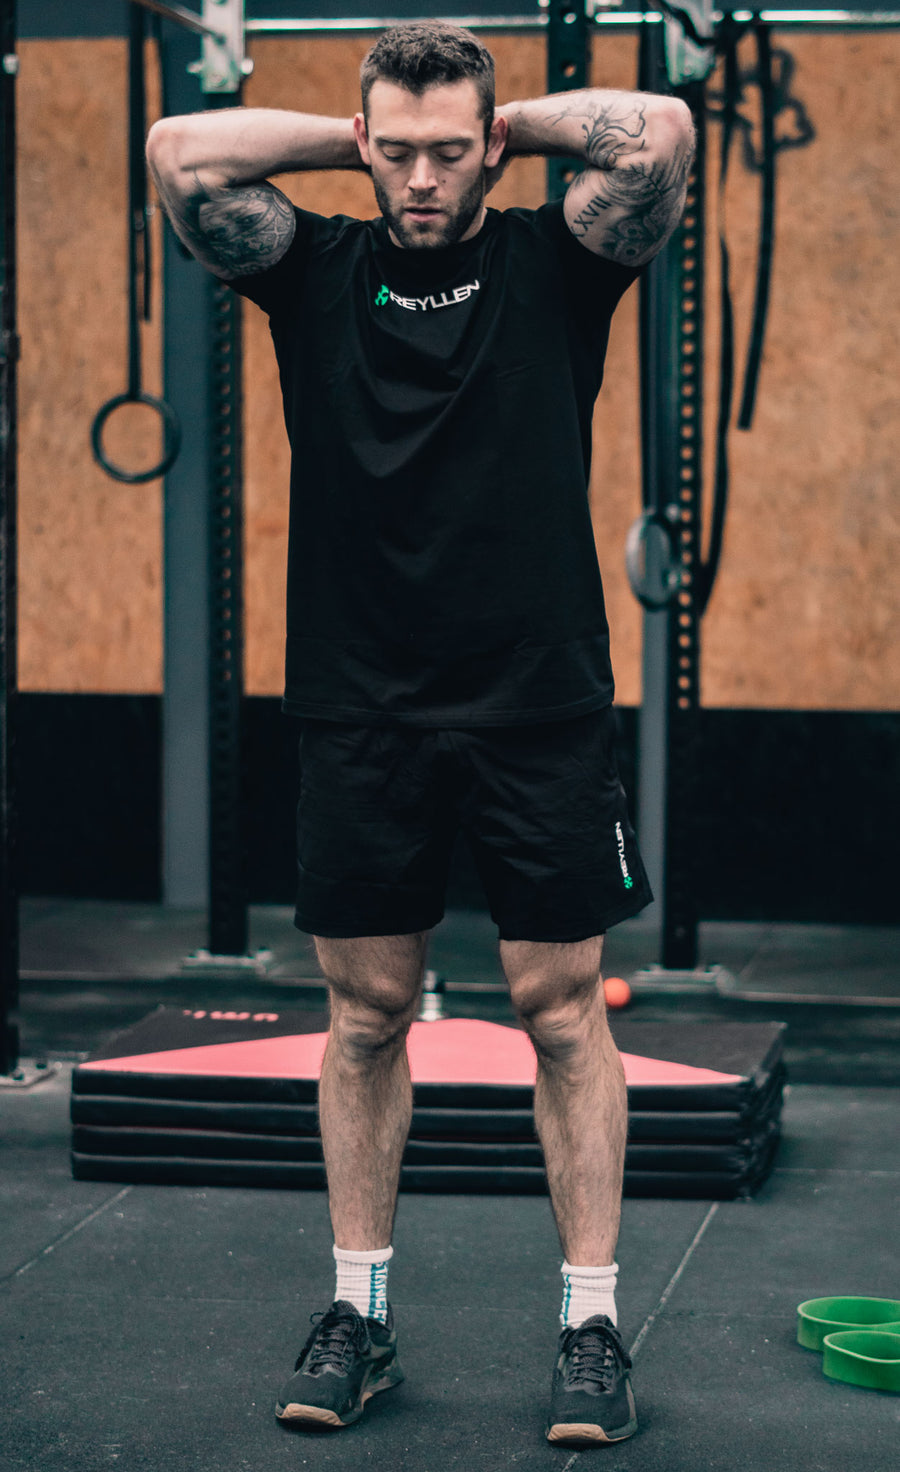 reyllen workout shorts black in gym